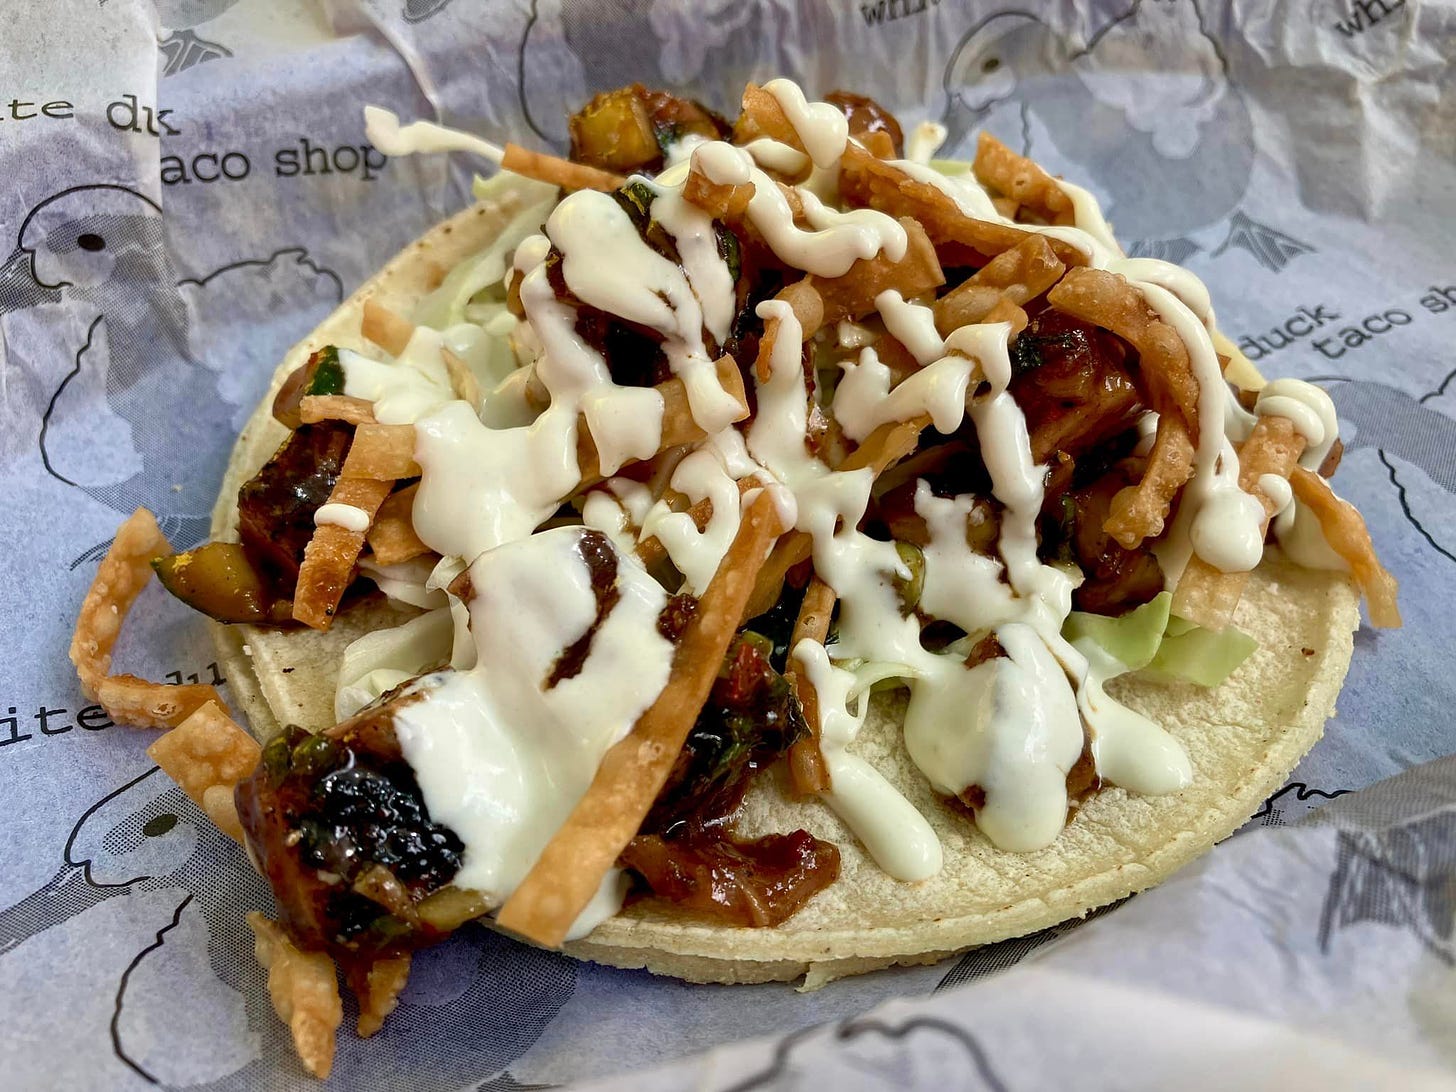 May be an image of taco, gyro and burrito